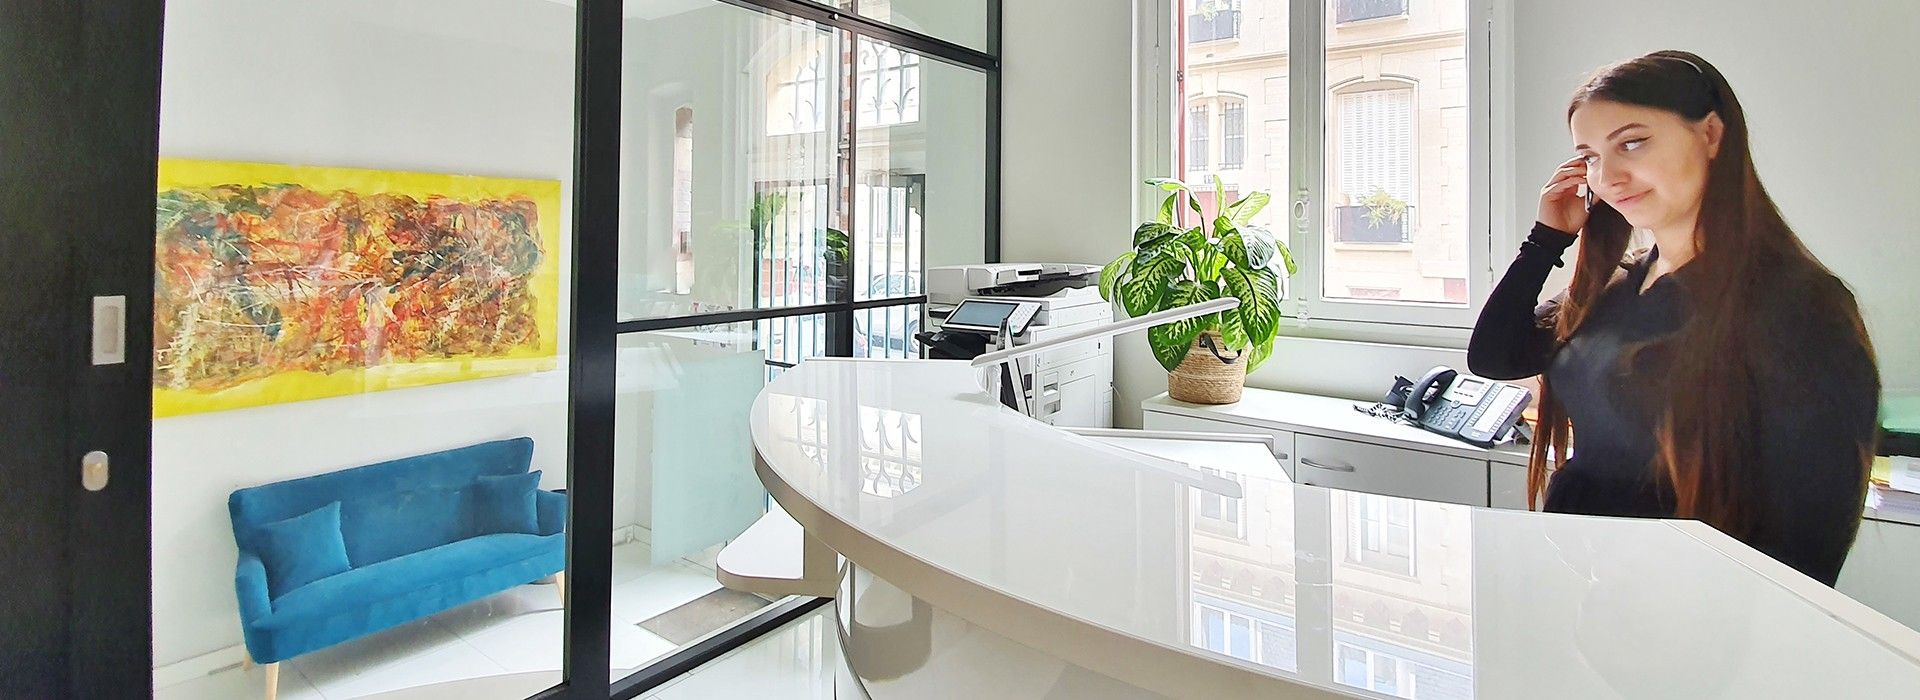 Achat vente appartement duplex loft appartement familial Paris 17 paris 16